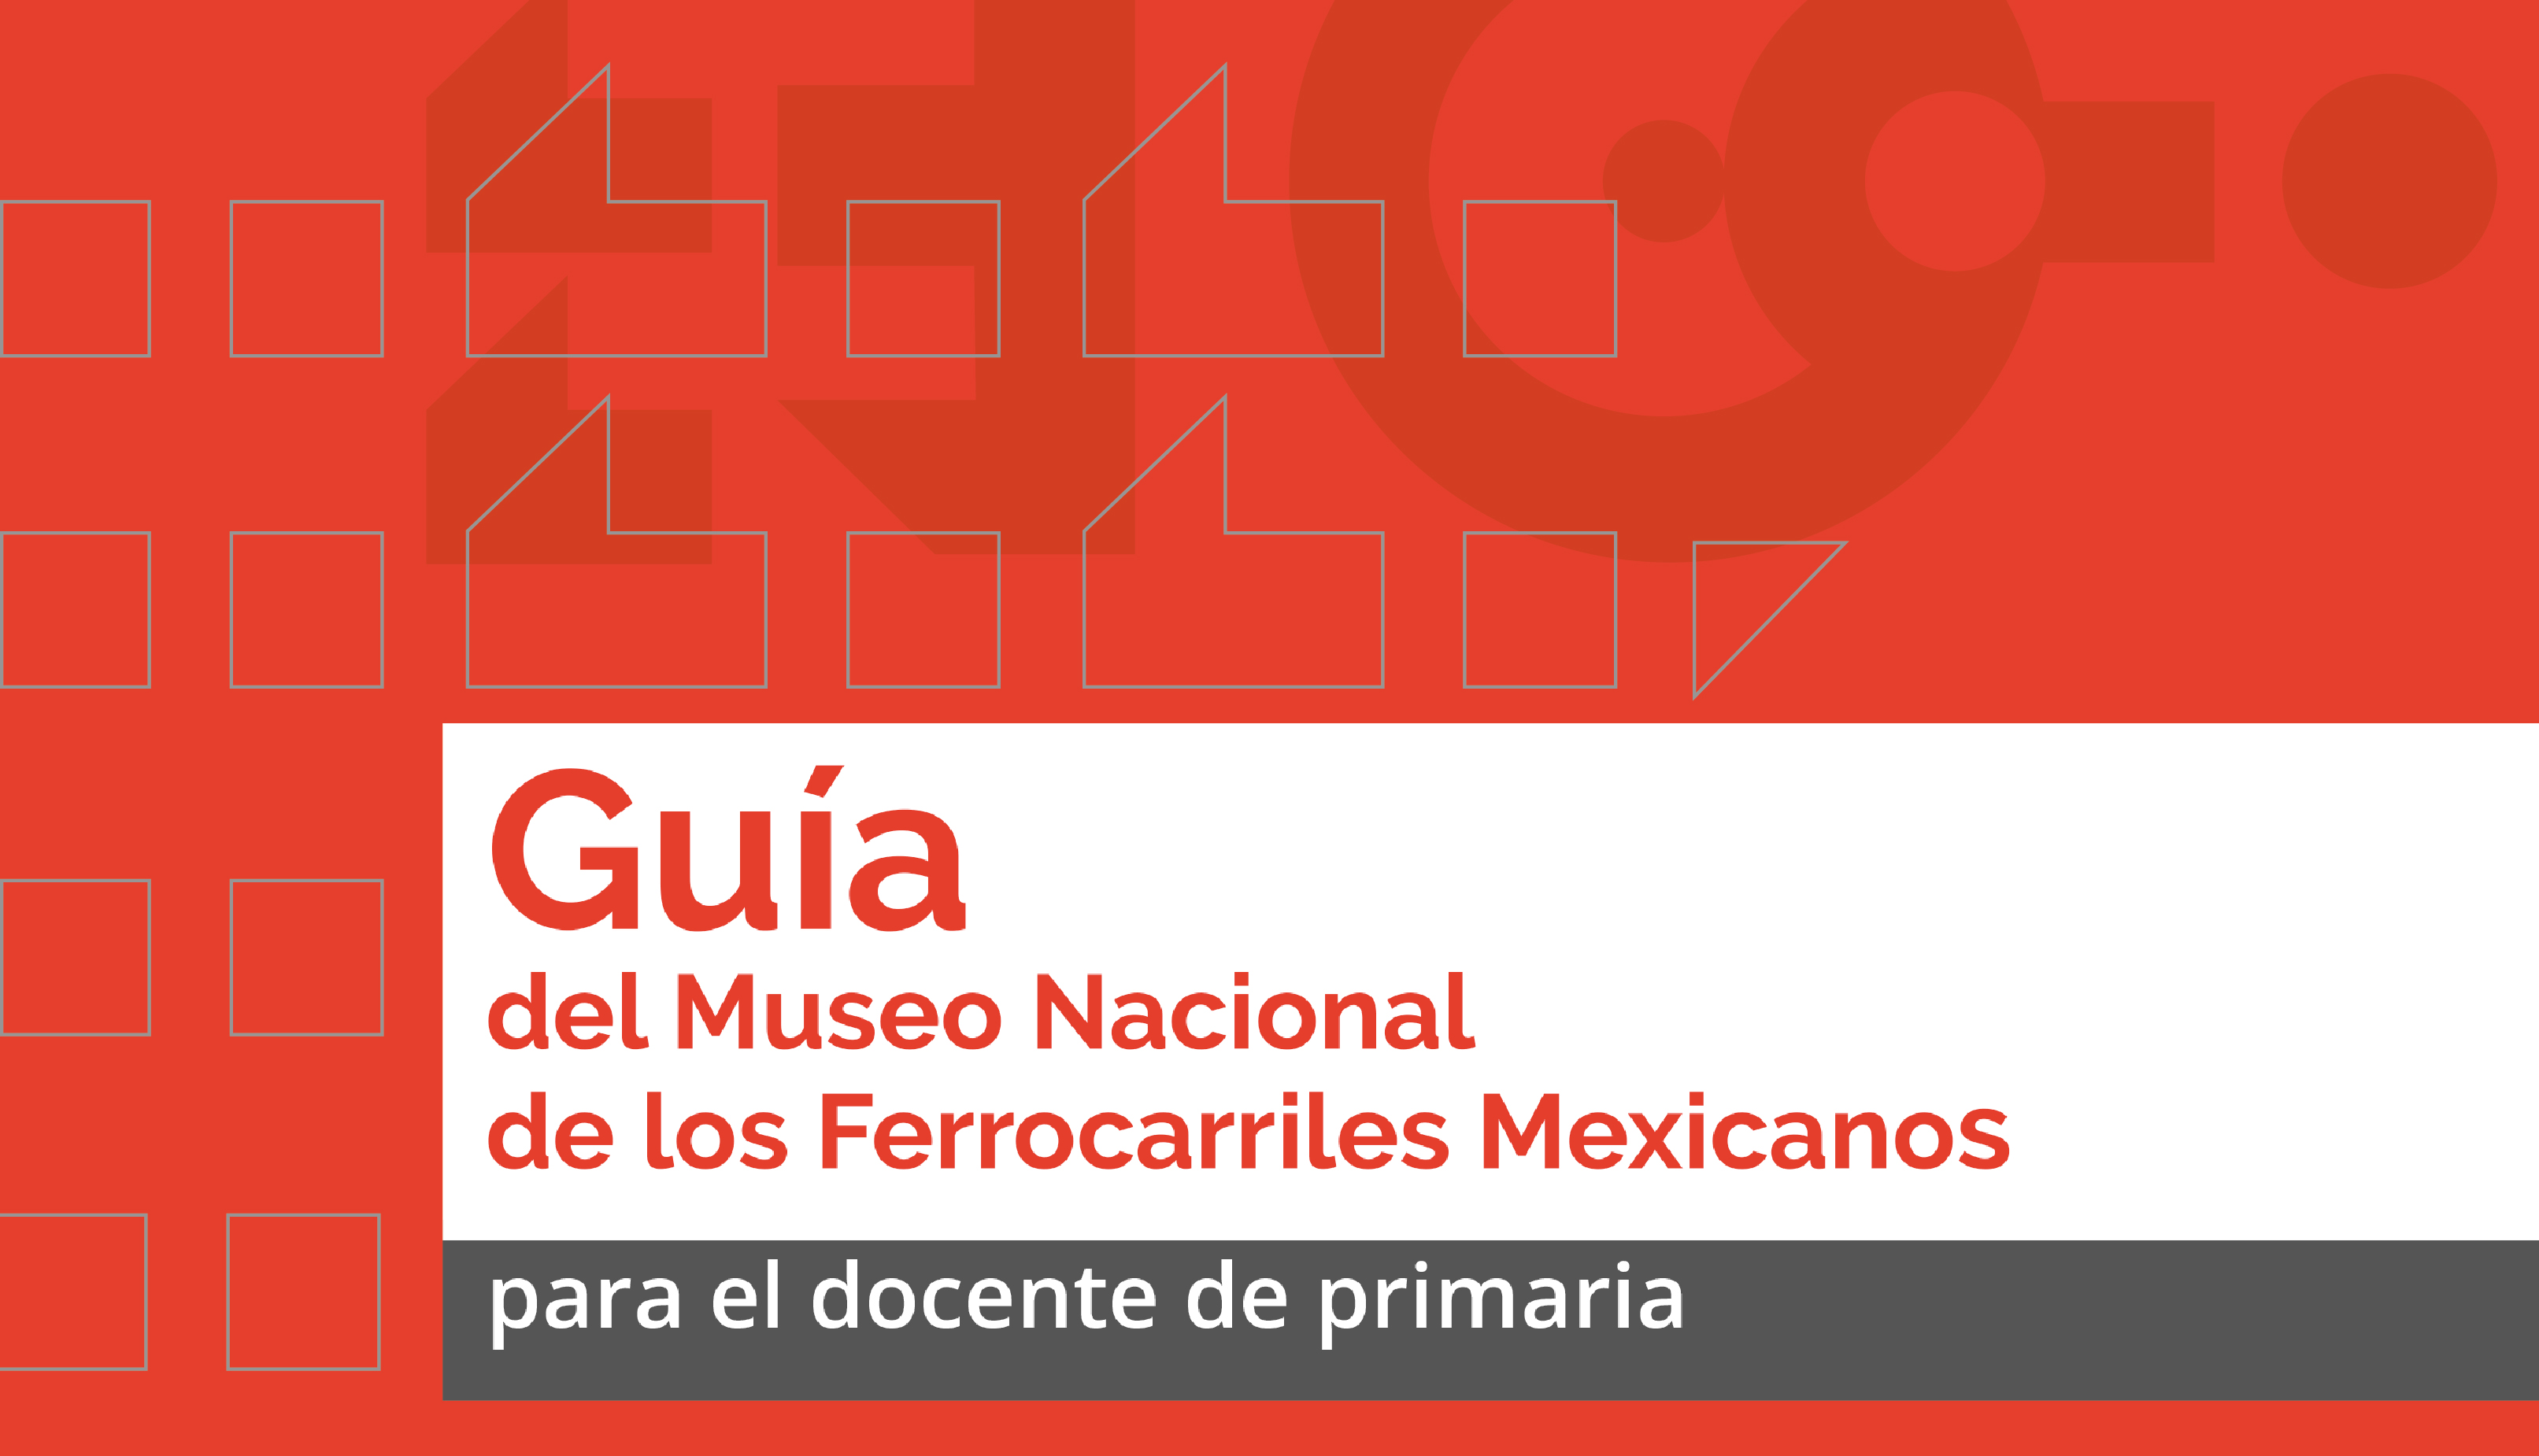 Guía del Museo Nacional de los Ferrocarriles Mexicanos, para el docente de primaria